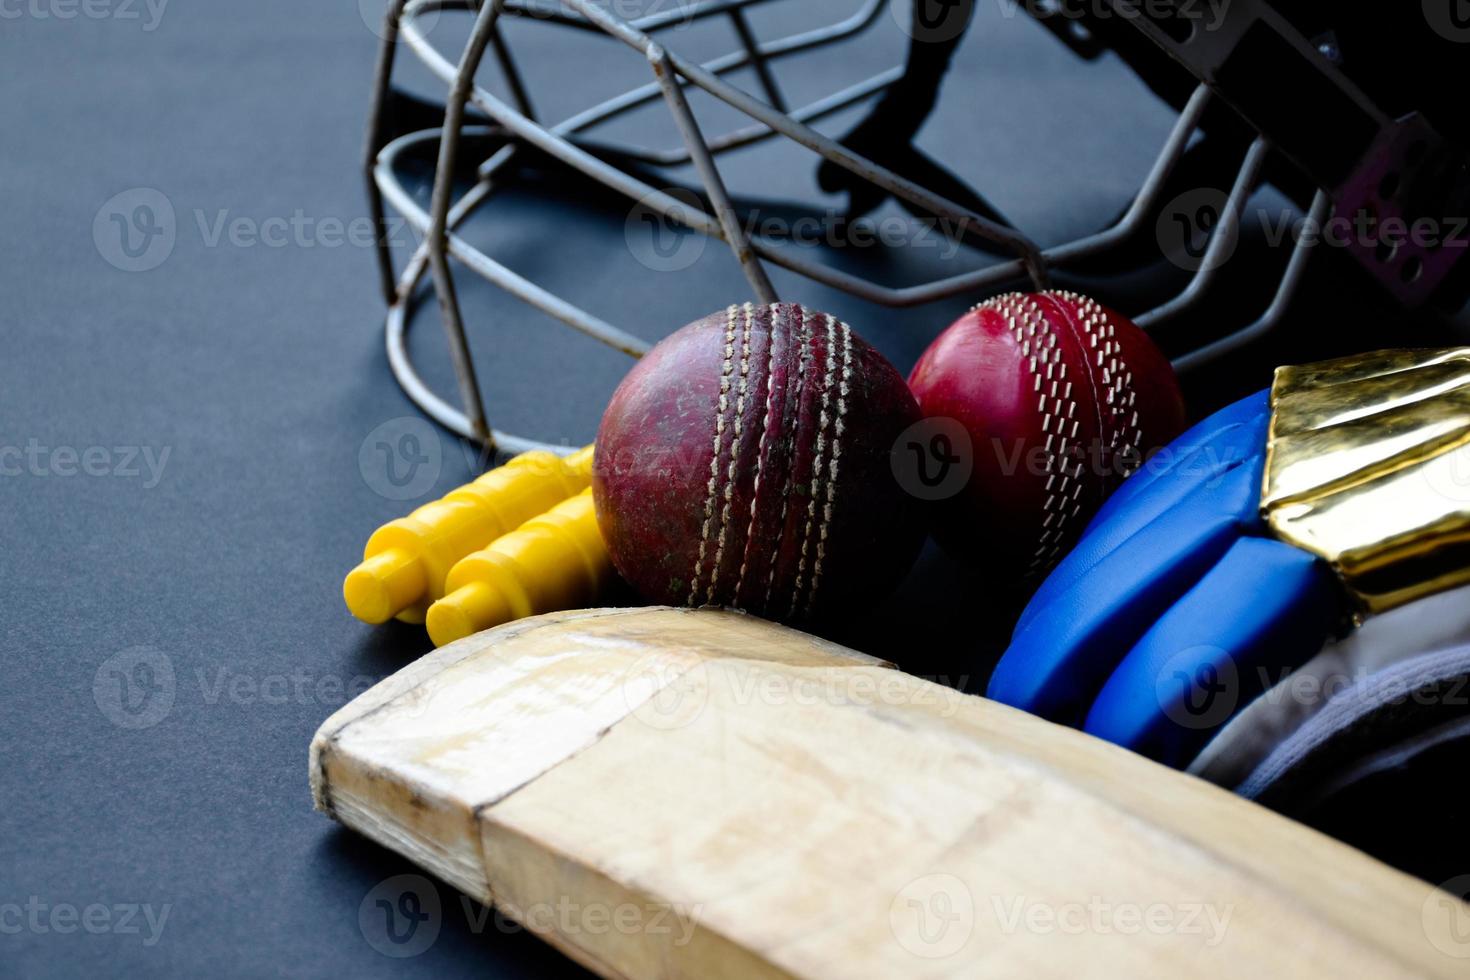 antiguos equipos deportivos de cricket de entrenamiento en suelo oscuro, pelota de cuero, wickets, casco y bate de madera, enfoque suave y selectivo, concepto tradicional de amantes del deporte de cricket en todo el mundo. foto